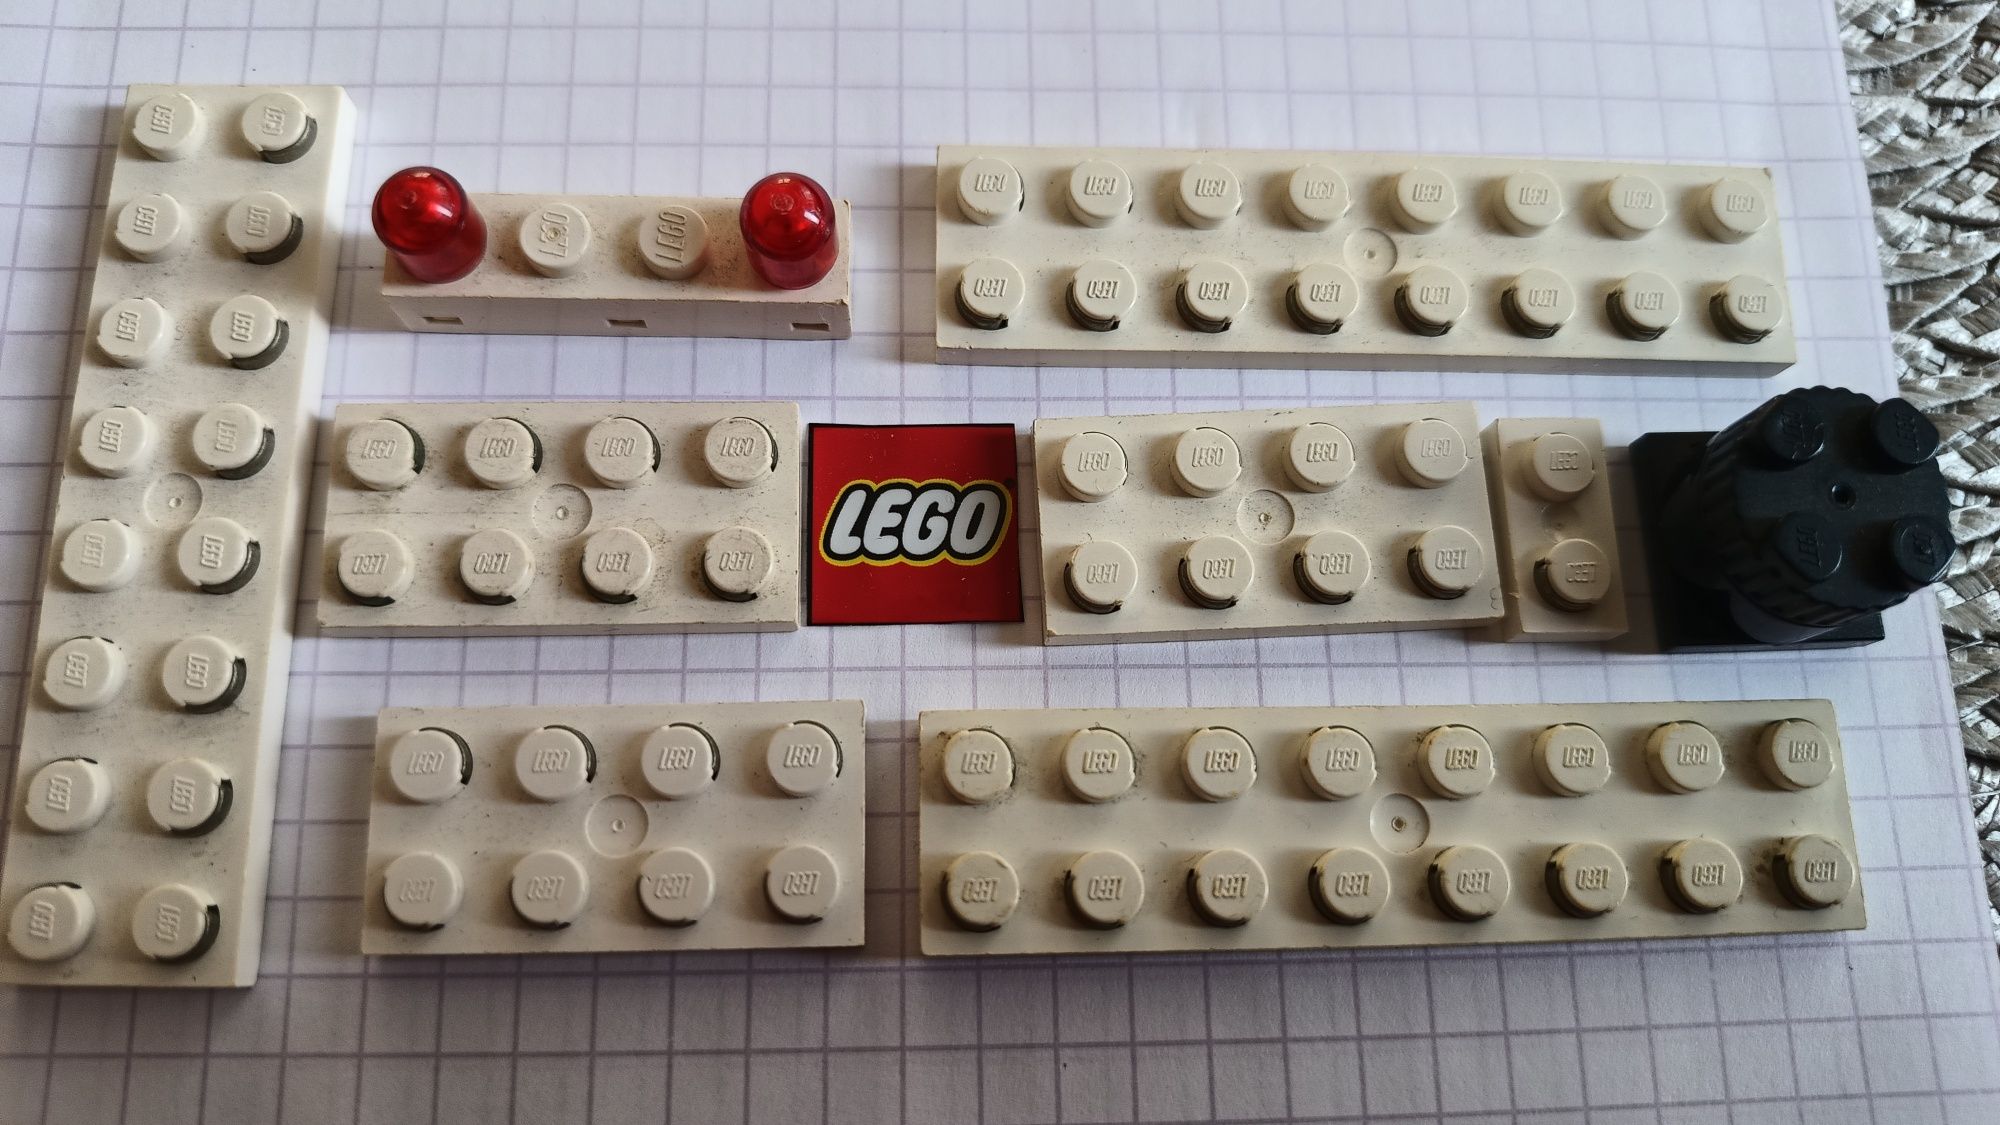 LEGO 9v syrena światła dźwiek klocki elektryczne legoland system kg